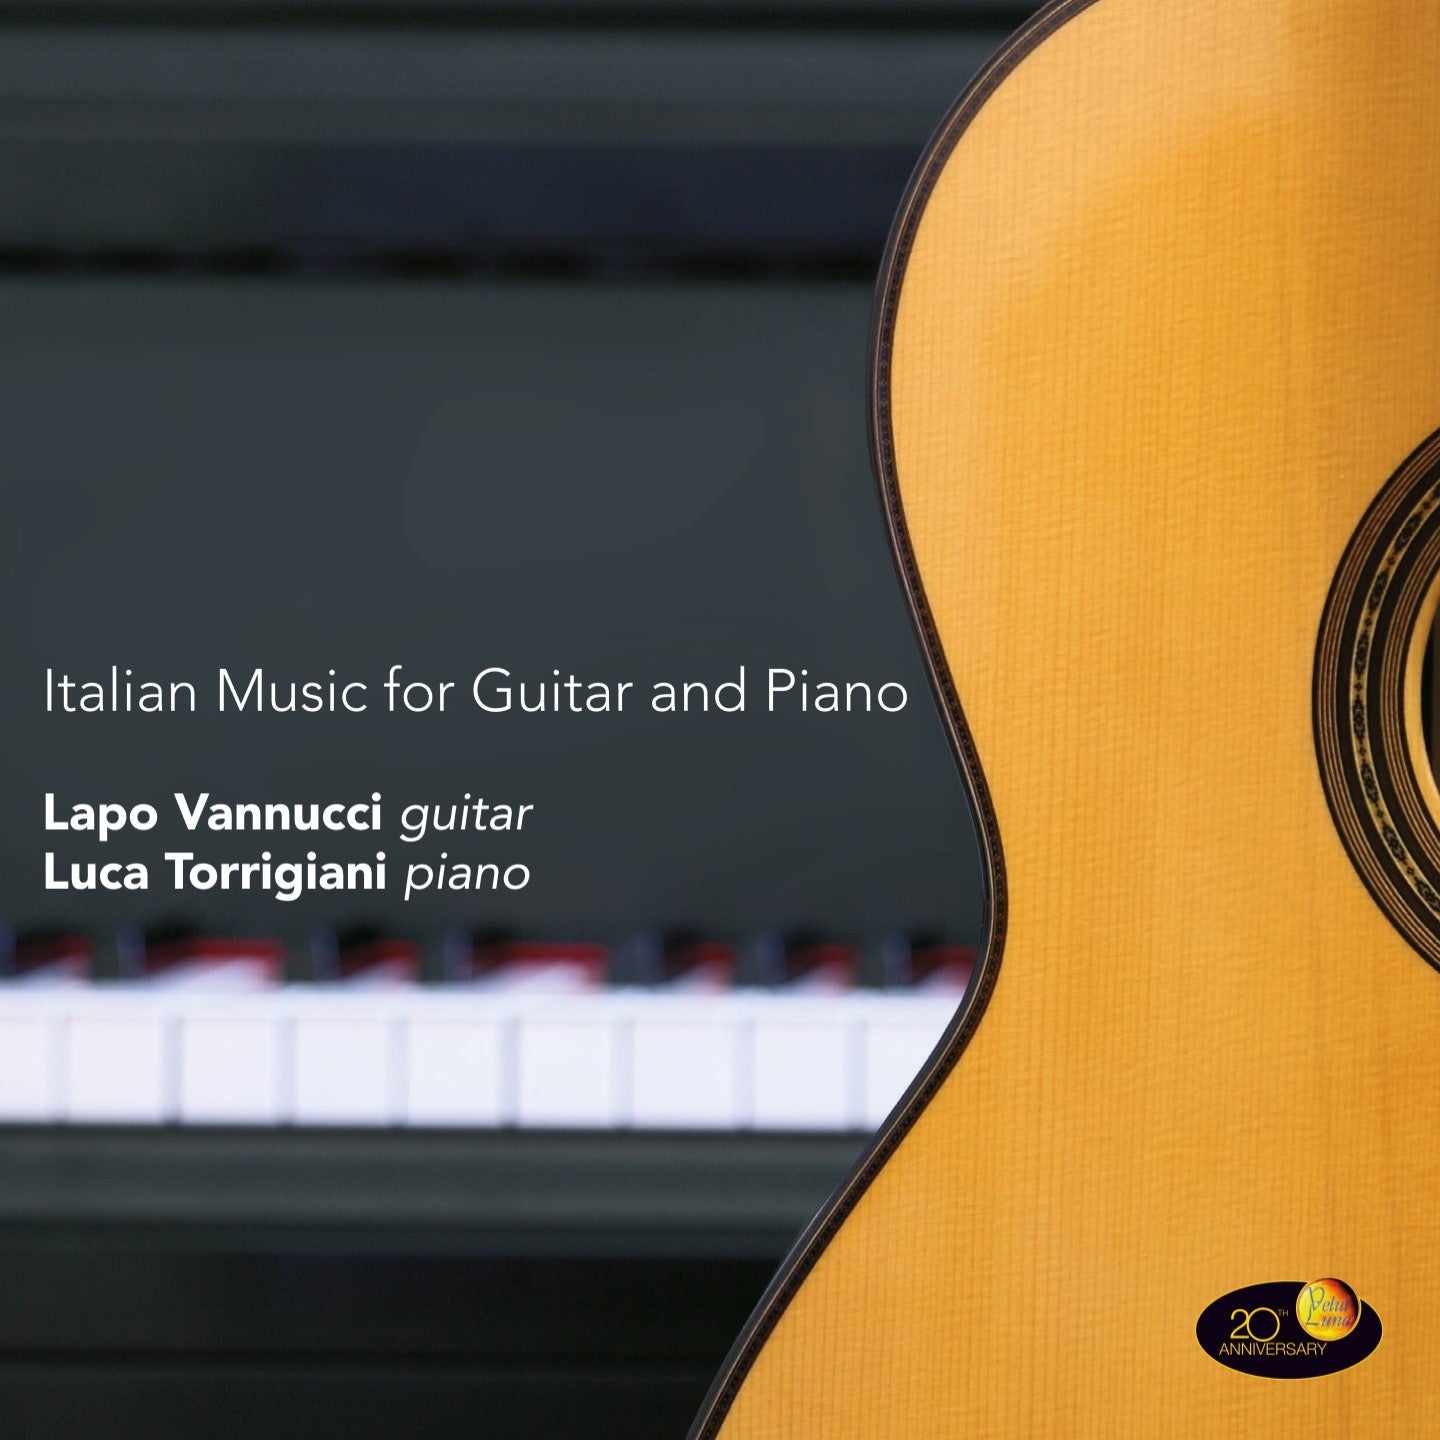 ITALIAN MUSIC FOR GUITAR AND PIANO - Lapo Vannucci | Luca Torrigiani